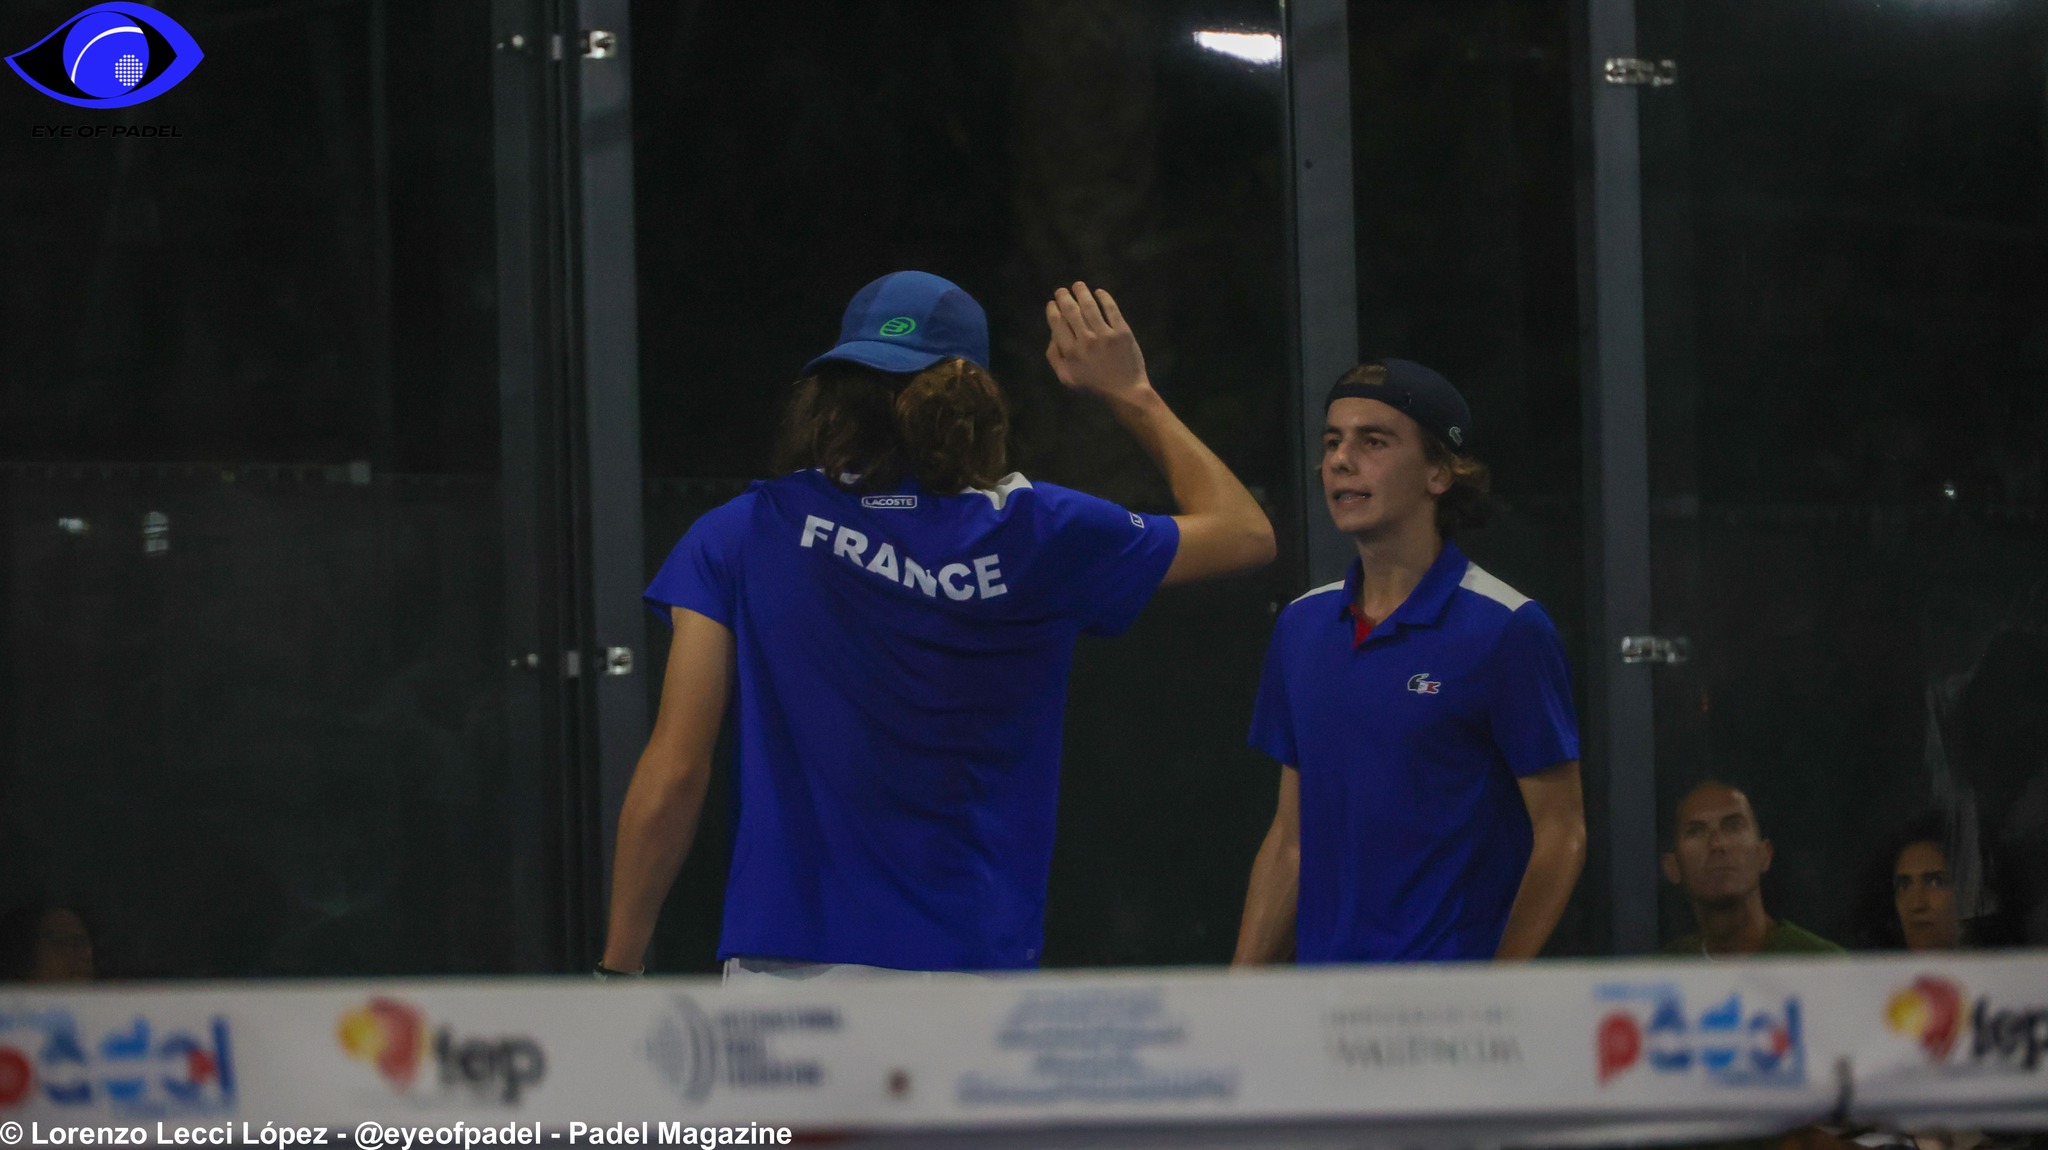 Mistrzostwa Europy Juniorów NA ŻYWO: Francja vs Holandia (M)